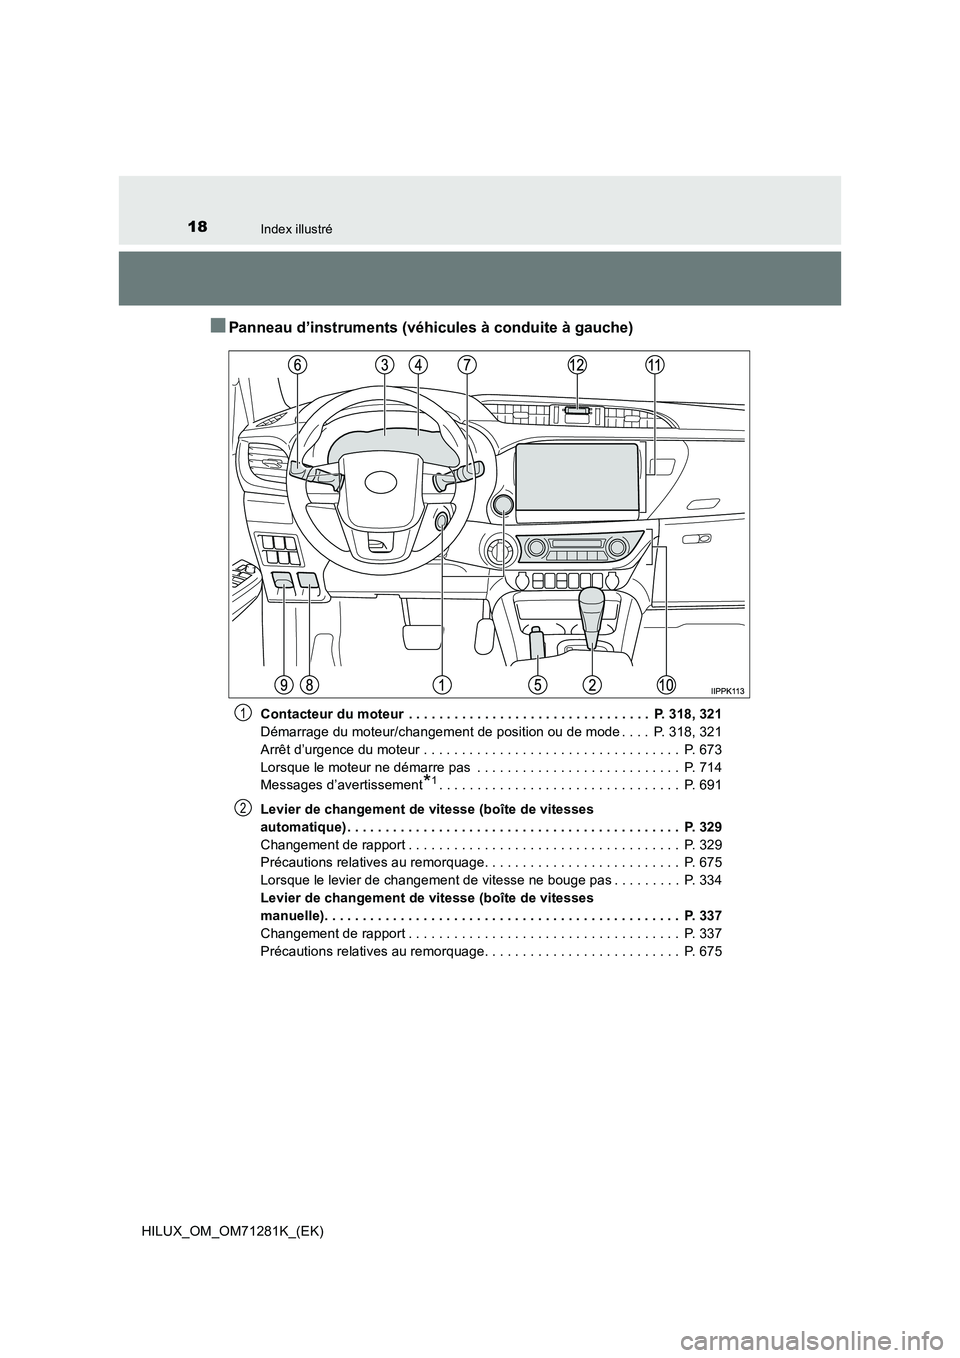 TOYOTA HILUX 2020  Notices Demploi (in French) 18Index illustré
HILUX_OM_OM71281K_(EK)
�QPanneau d’instruments (véhicules à conduite à gauche)
Contacteur du moteur  . . . . . . . . . . . . . . . . . . . . . . . . . . . . . . . .  P. 318, 321